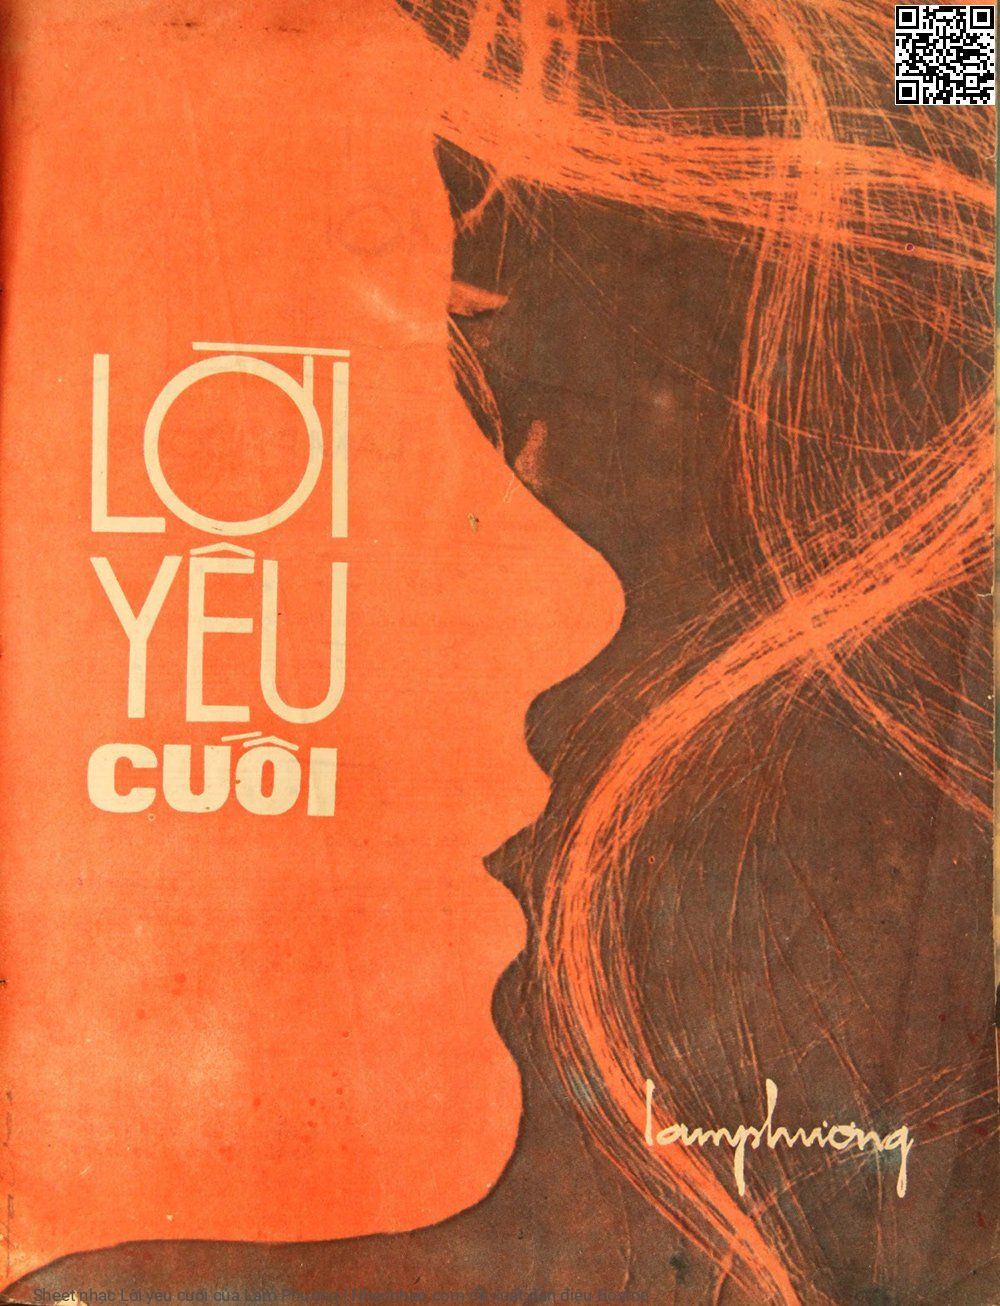 Sheet nhạc Lời yêu cuối - Lam Phương